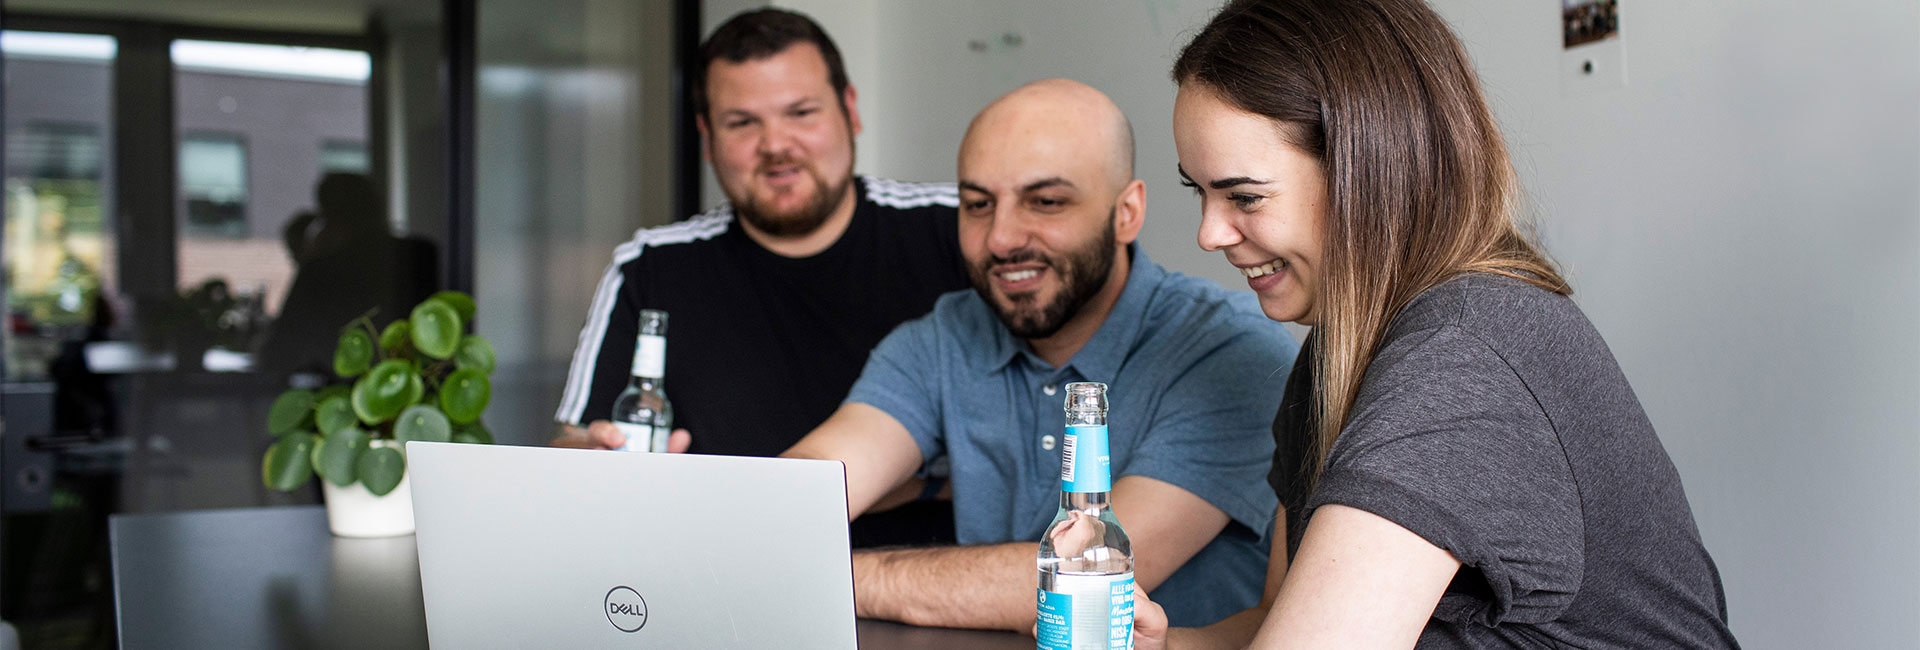 Jobs bei mindshape: Drei Personen schauen im Meeting auf einen Laptop.